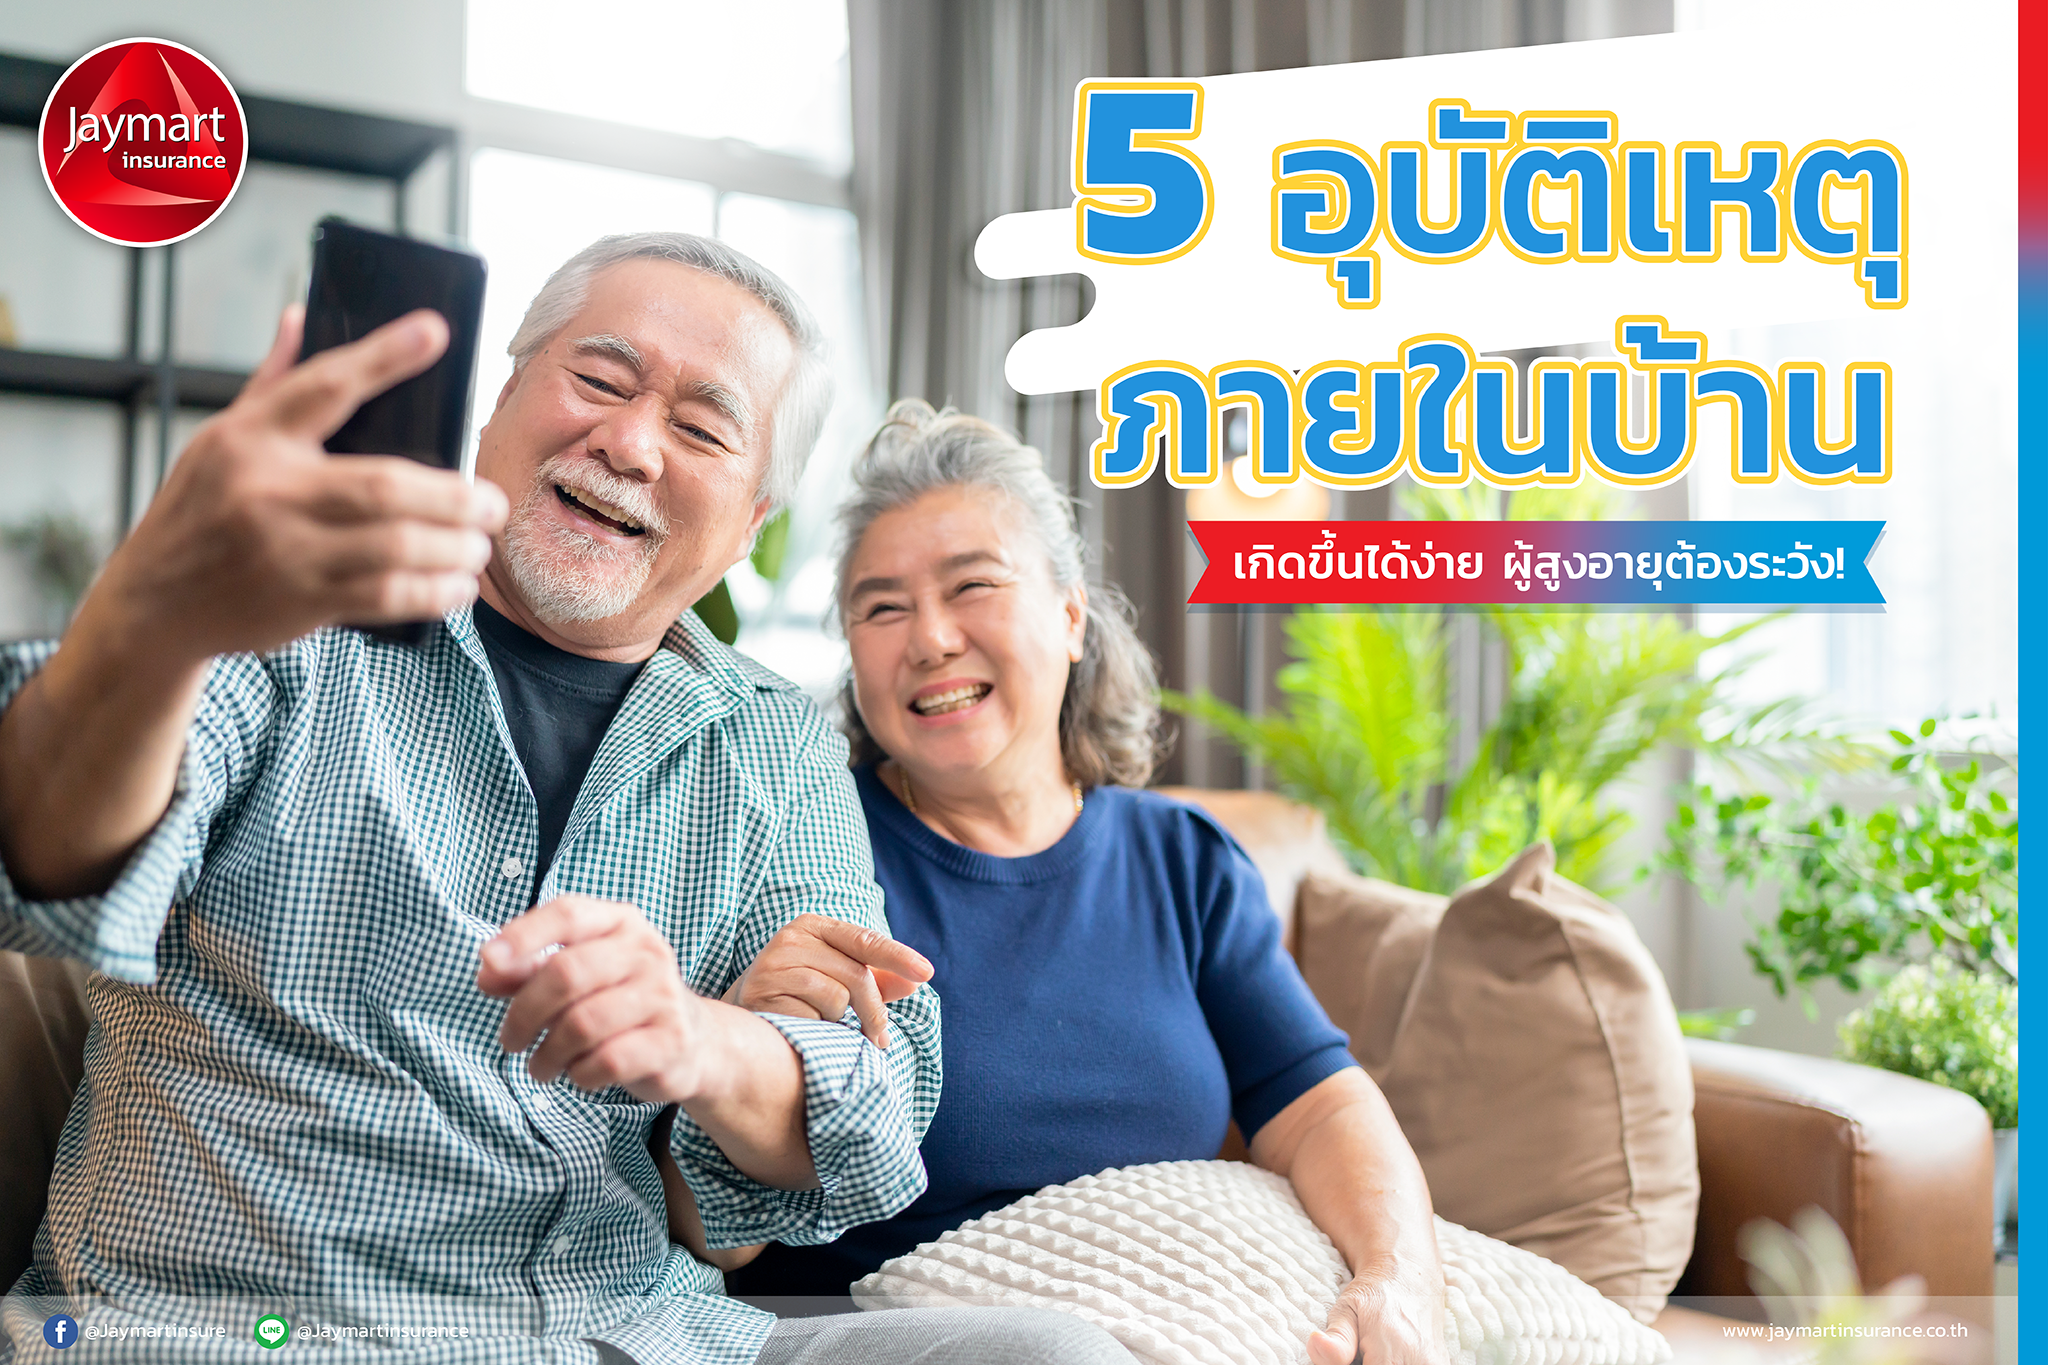 5 อุบัติเหตุภายในบ้าน เกิดขึ้นได้ง่าย ผู้สูงอายุต้องระวัง! 